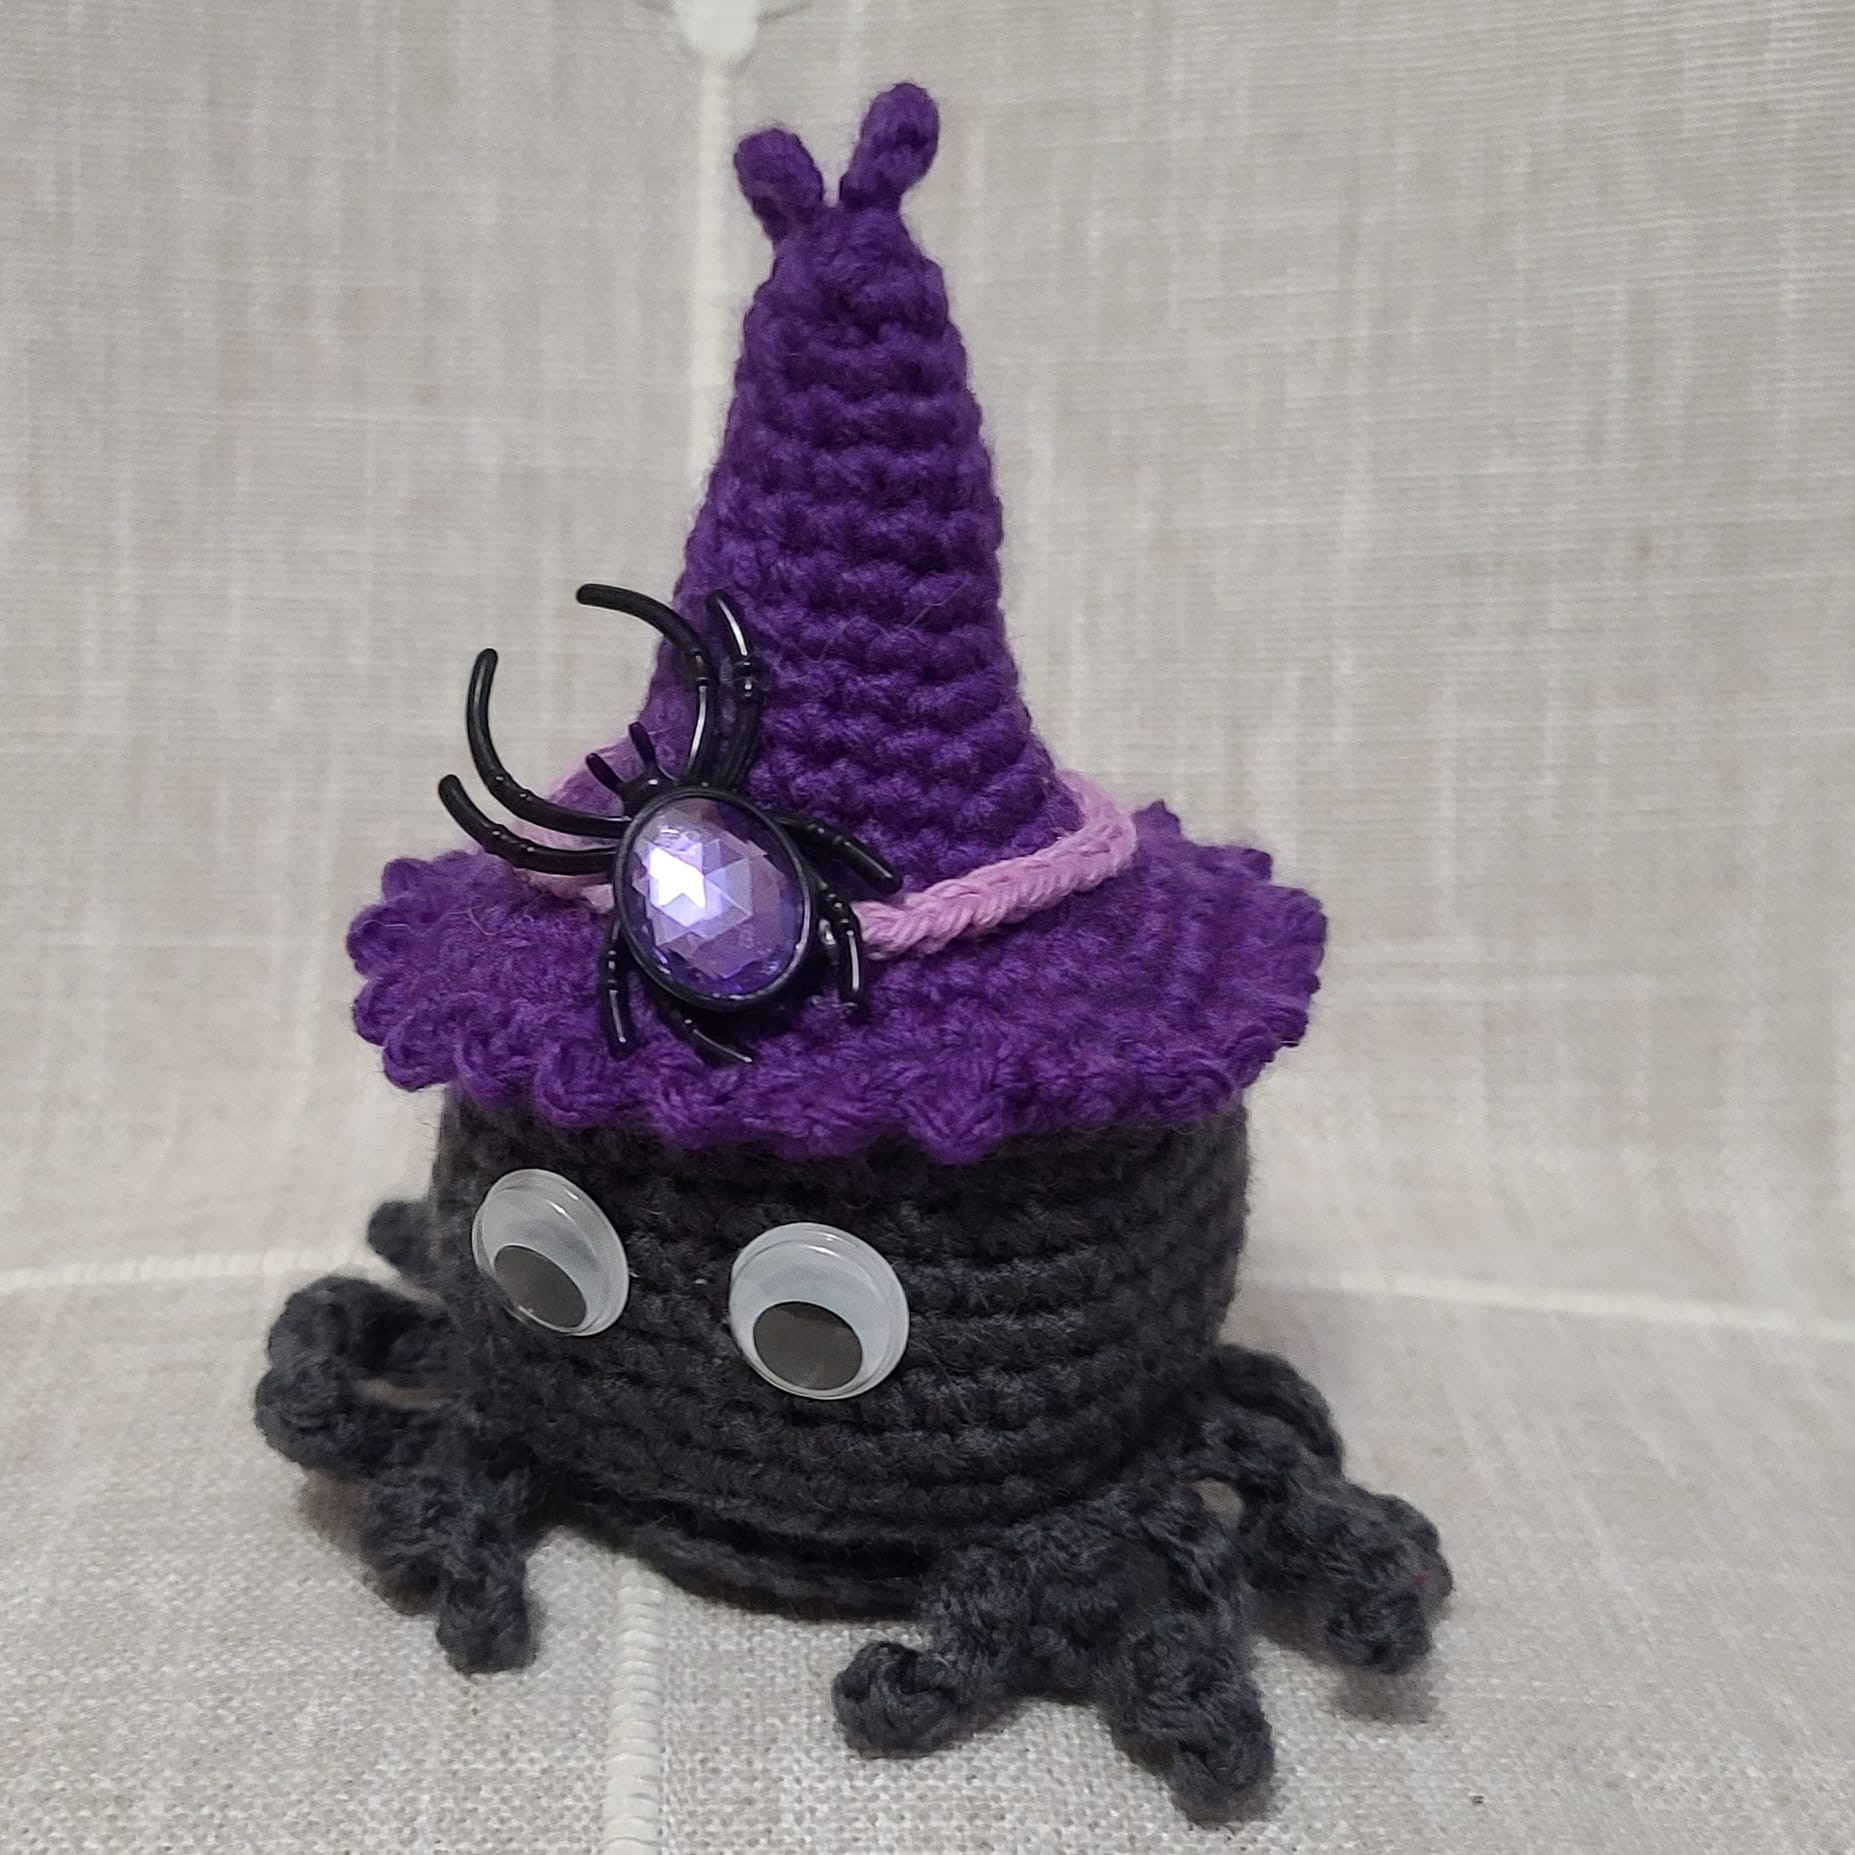 Crochet amigurumi halloween dark gray spider purple witch hat